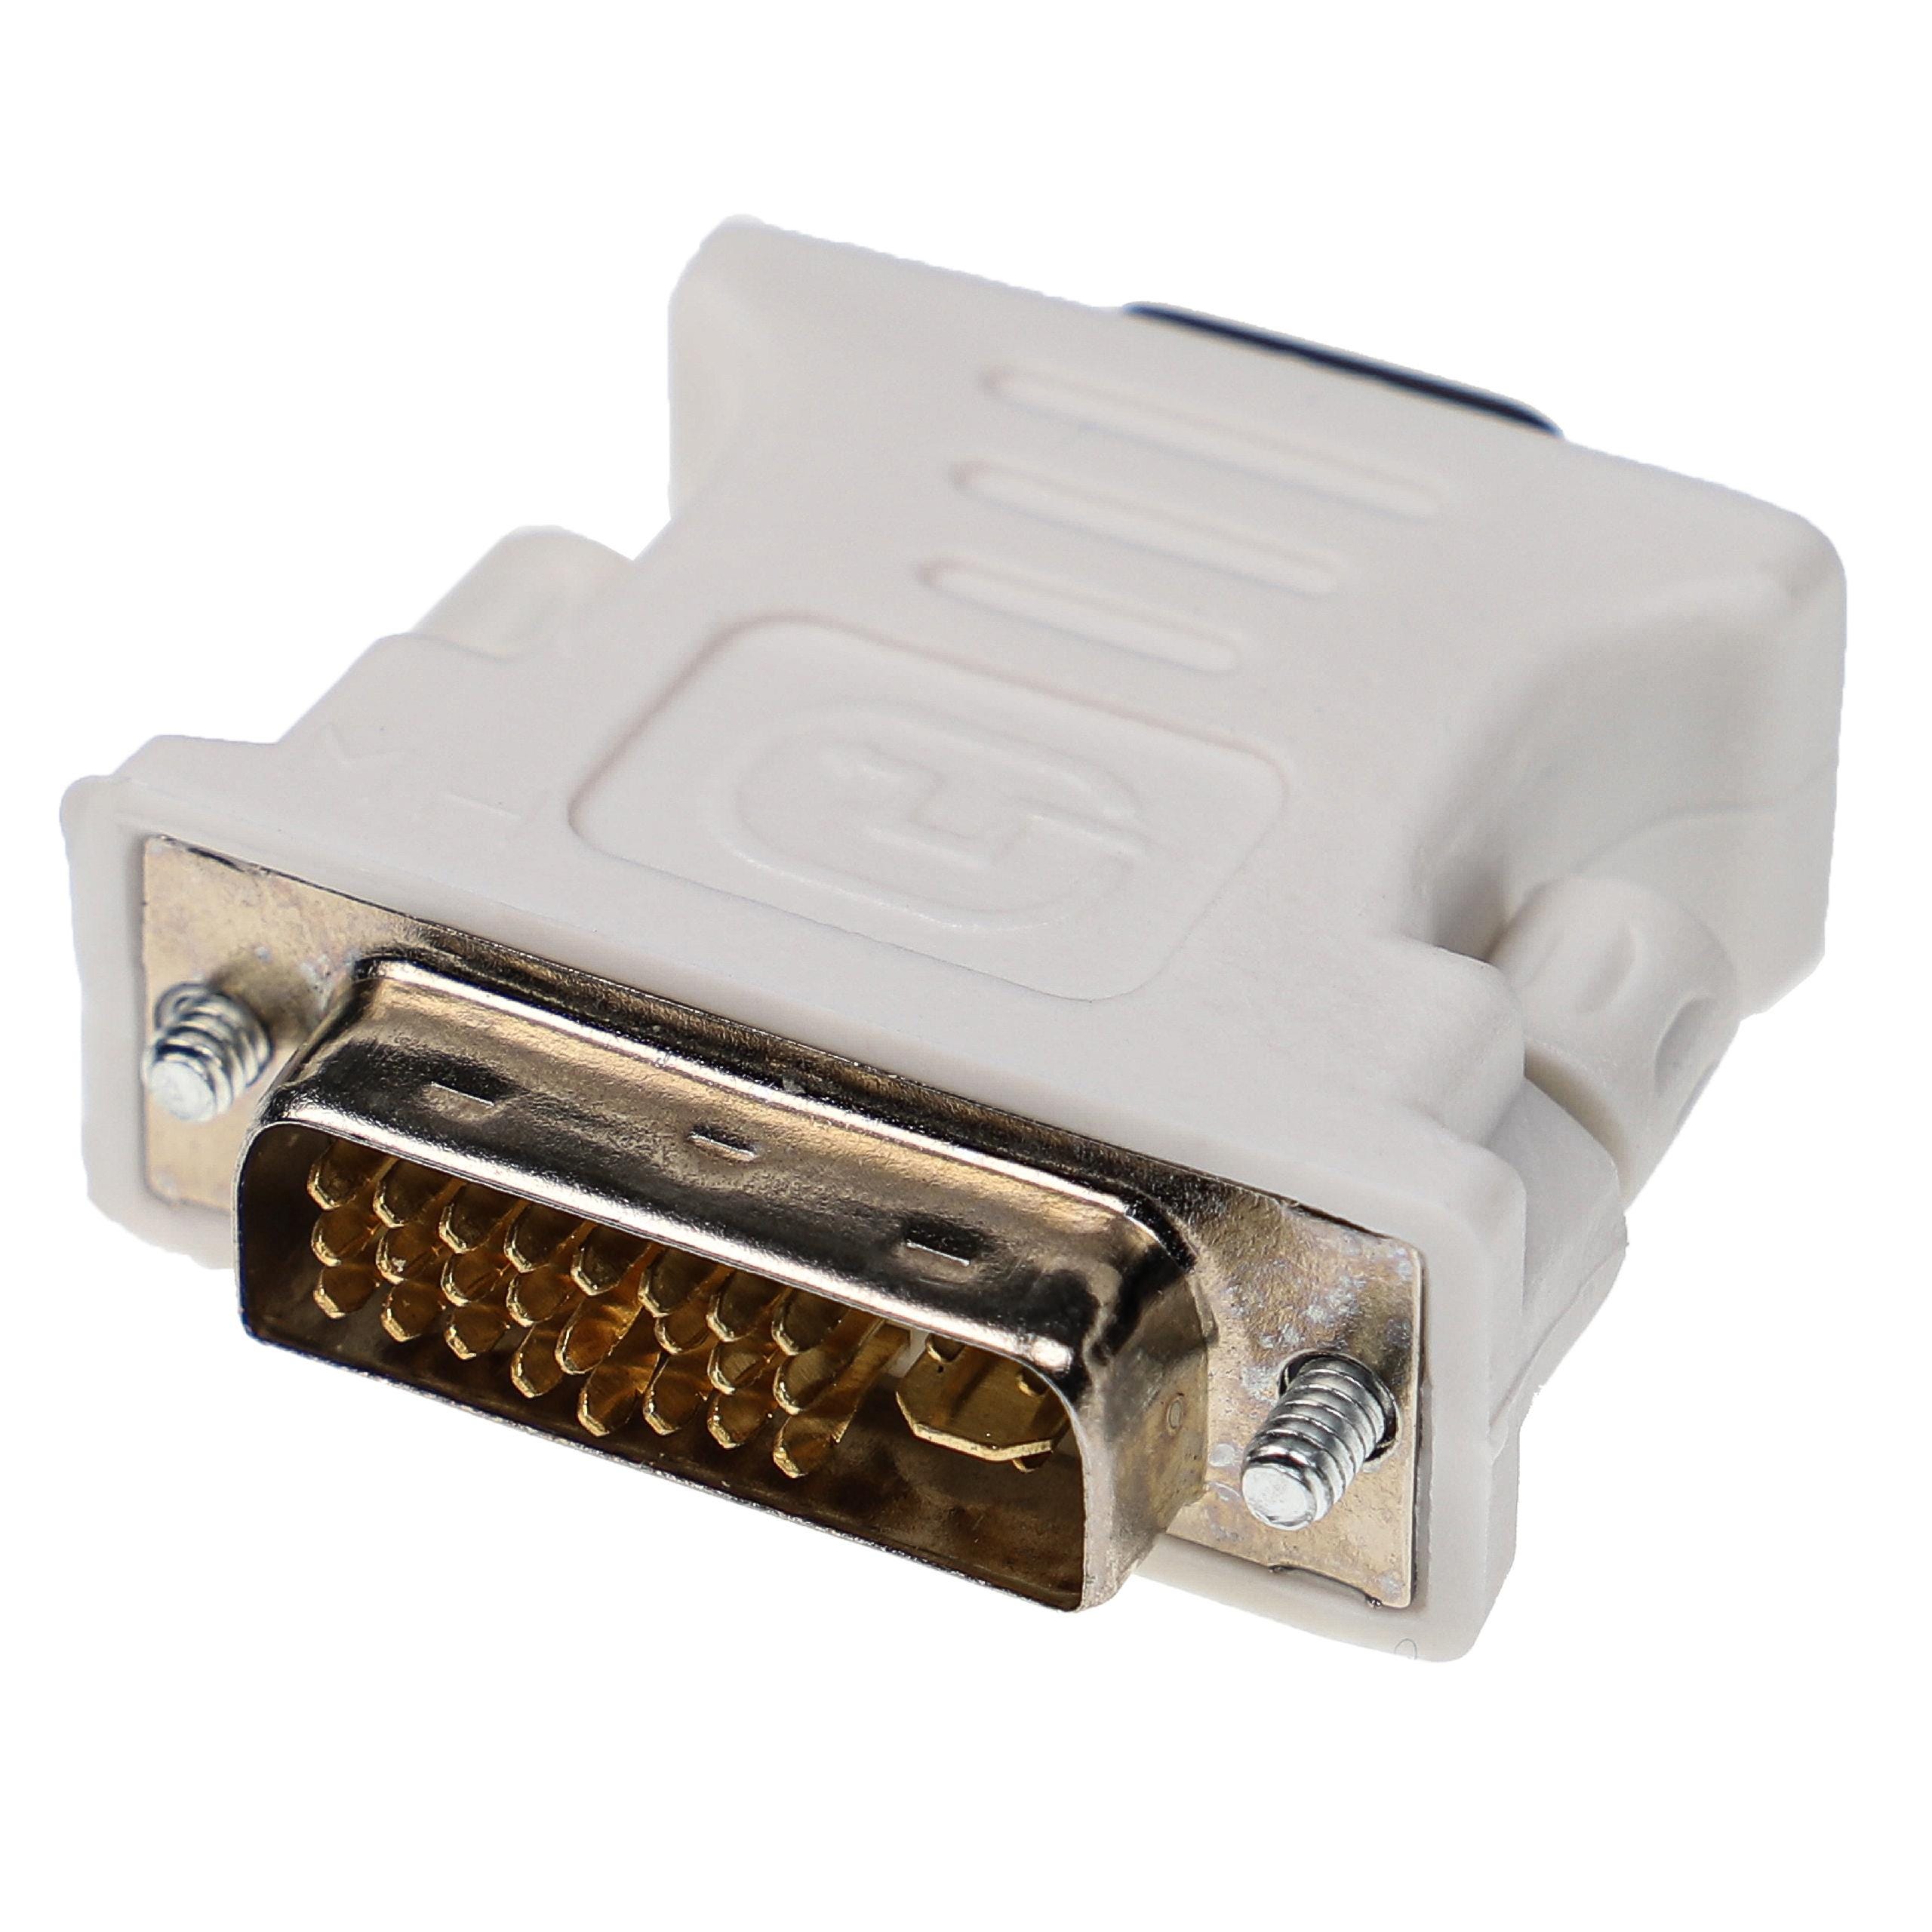 Adaptateur DVI-I mâle / VGA (HDDB15) femelle